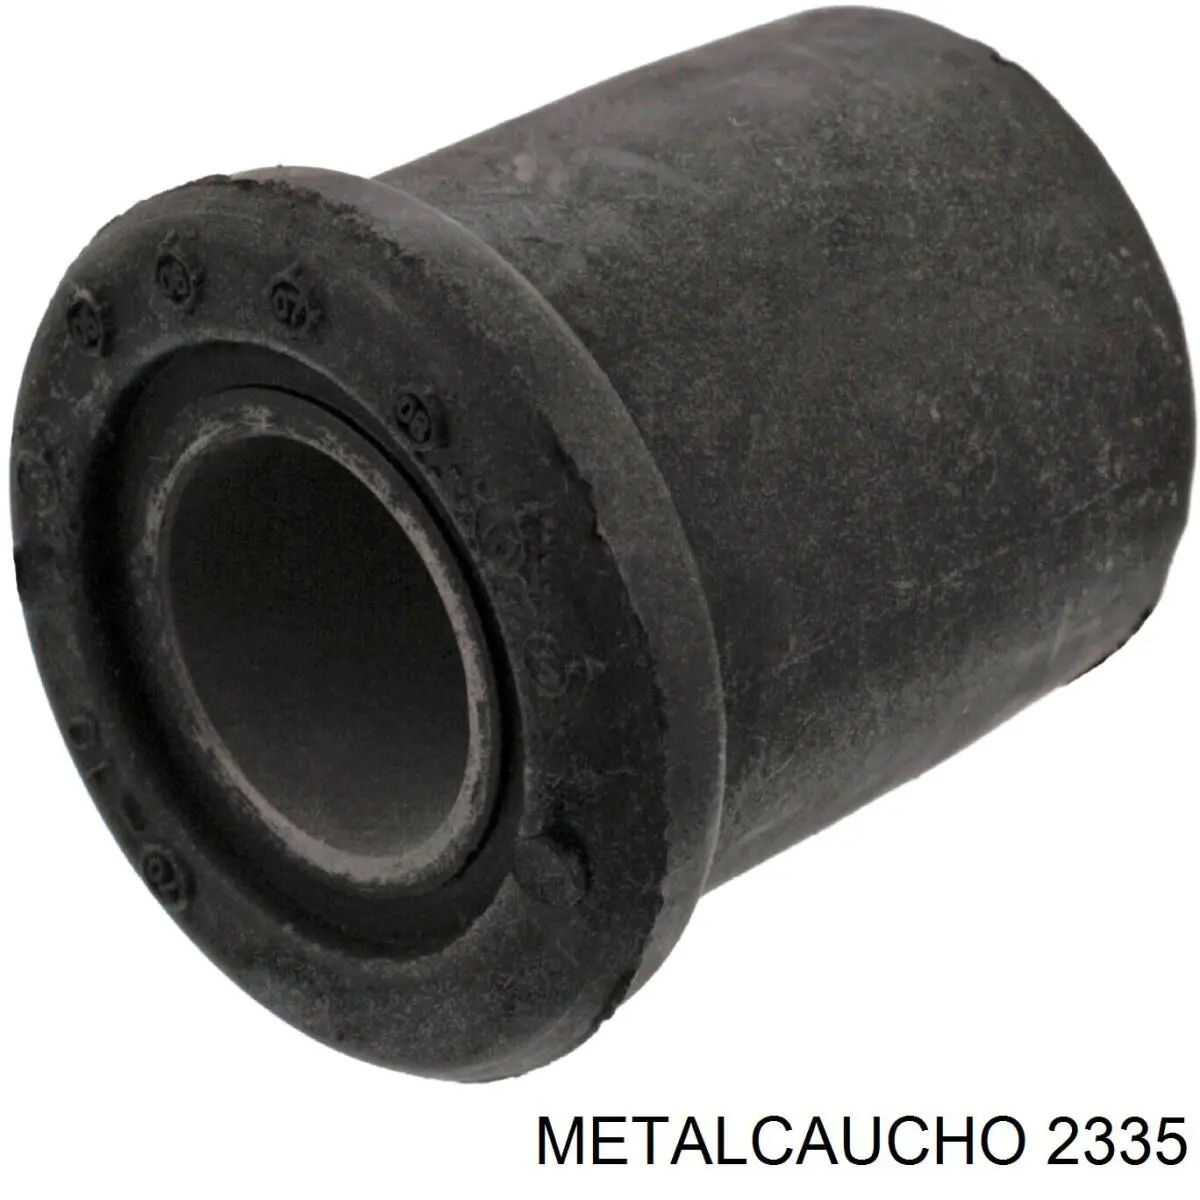 2335 Metalcaucho щуп (индикатор уровня масла в двигателе)